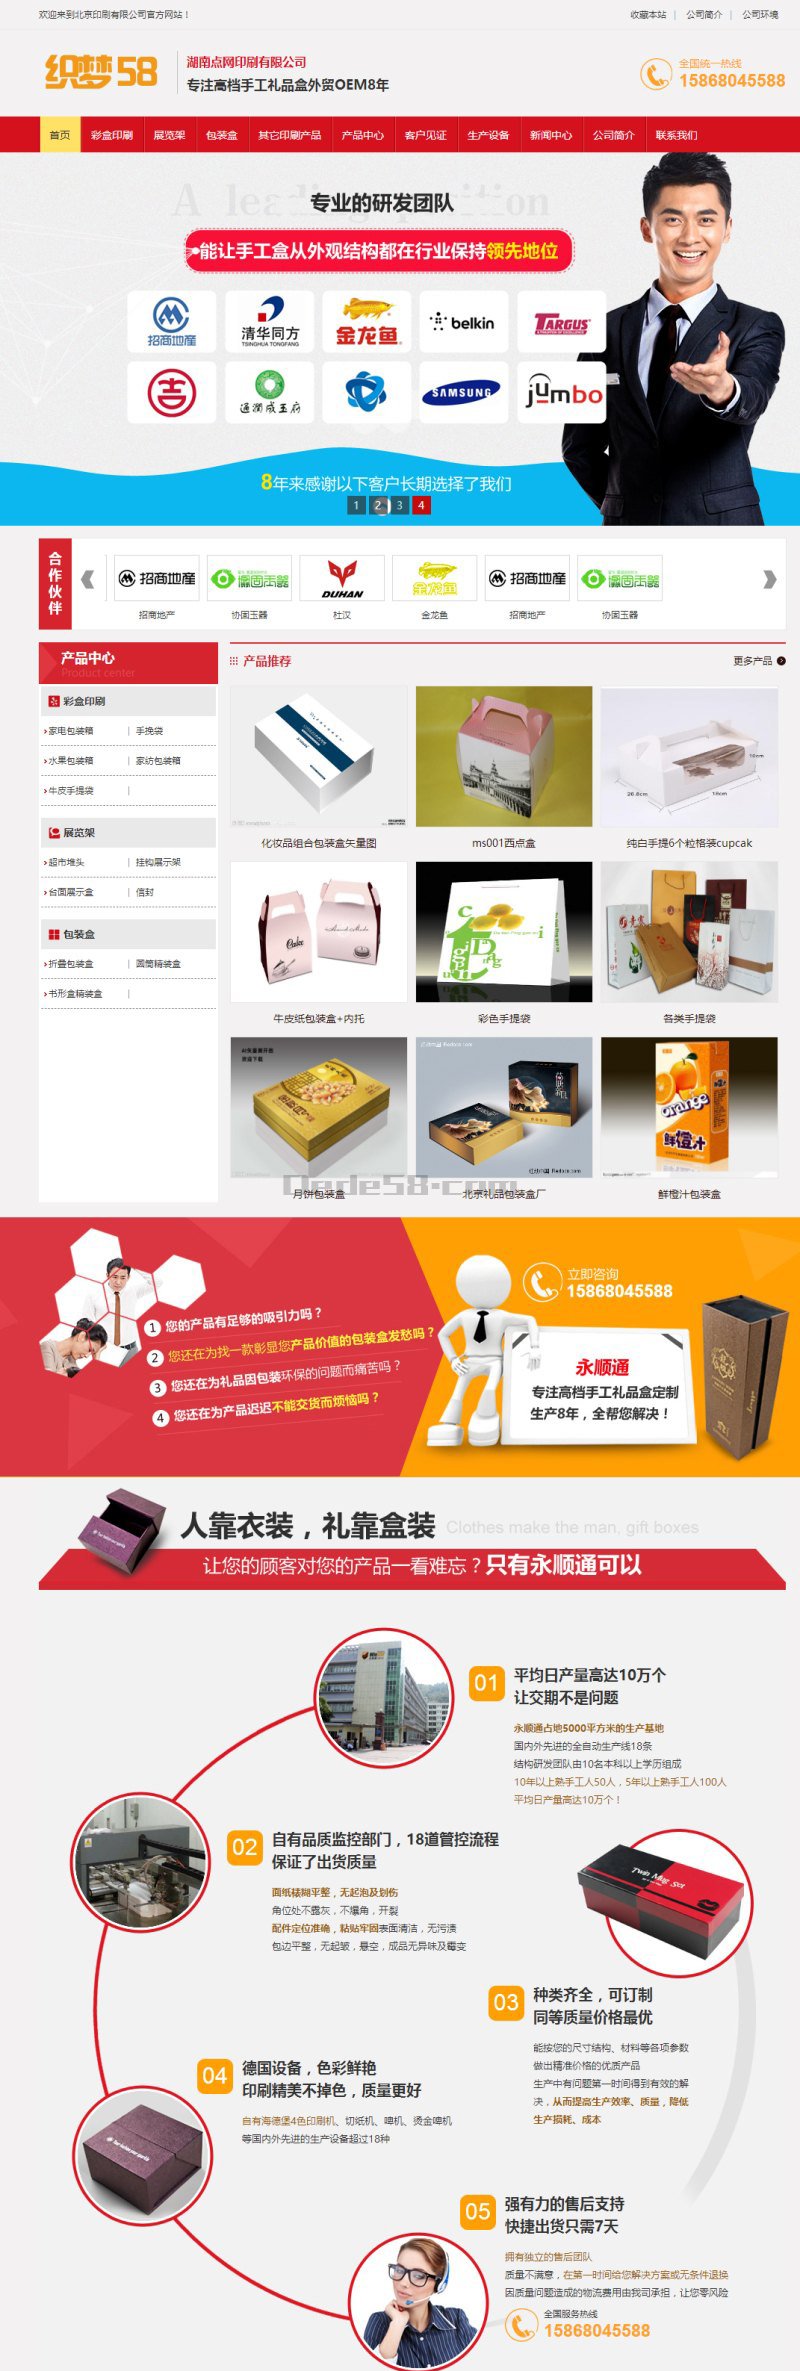 织梦CMS模板_织梦营销型印刷品包装企业网站织梦模板(带手机端)